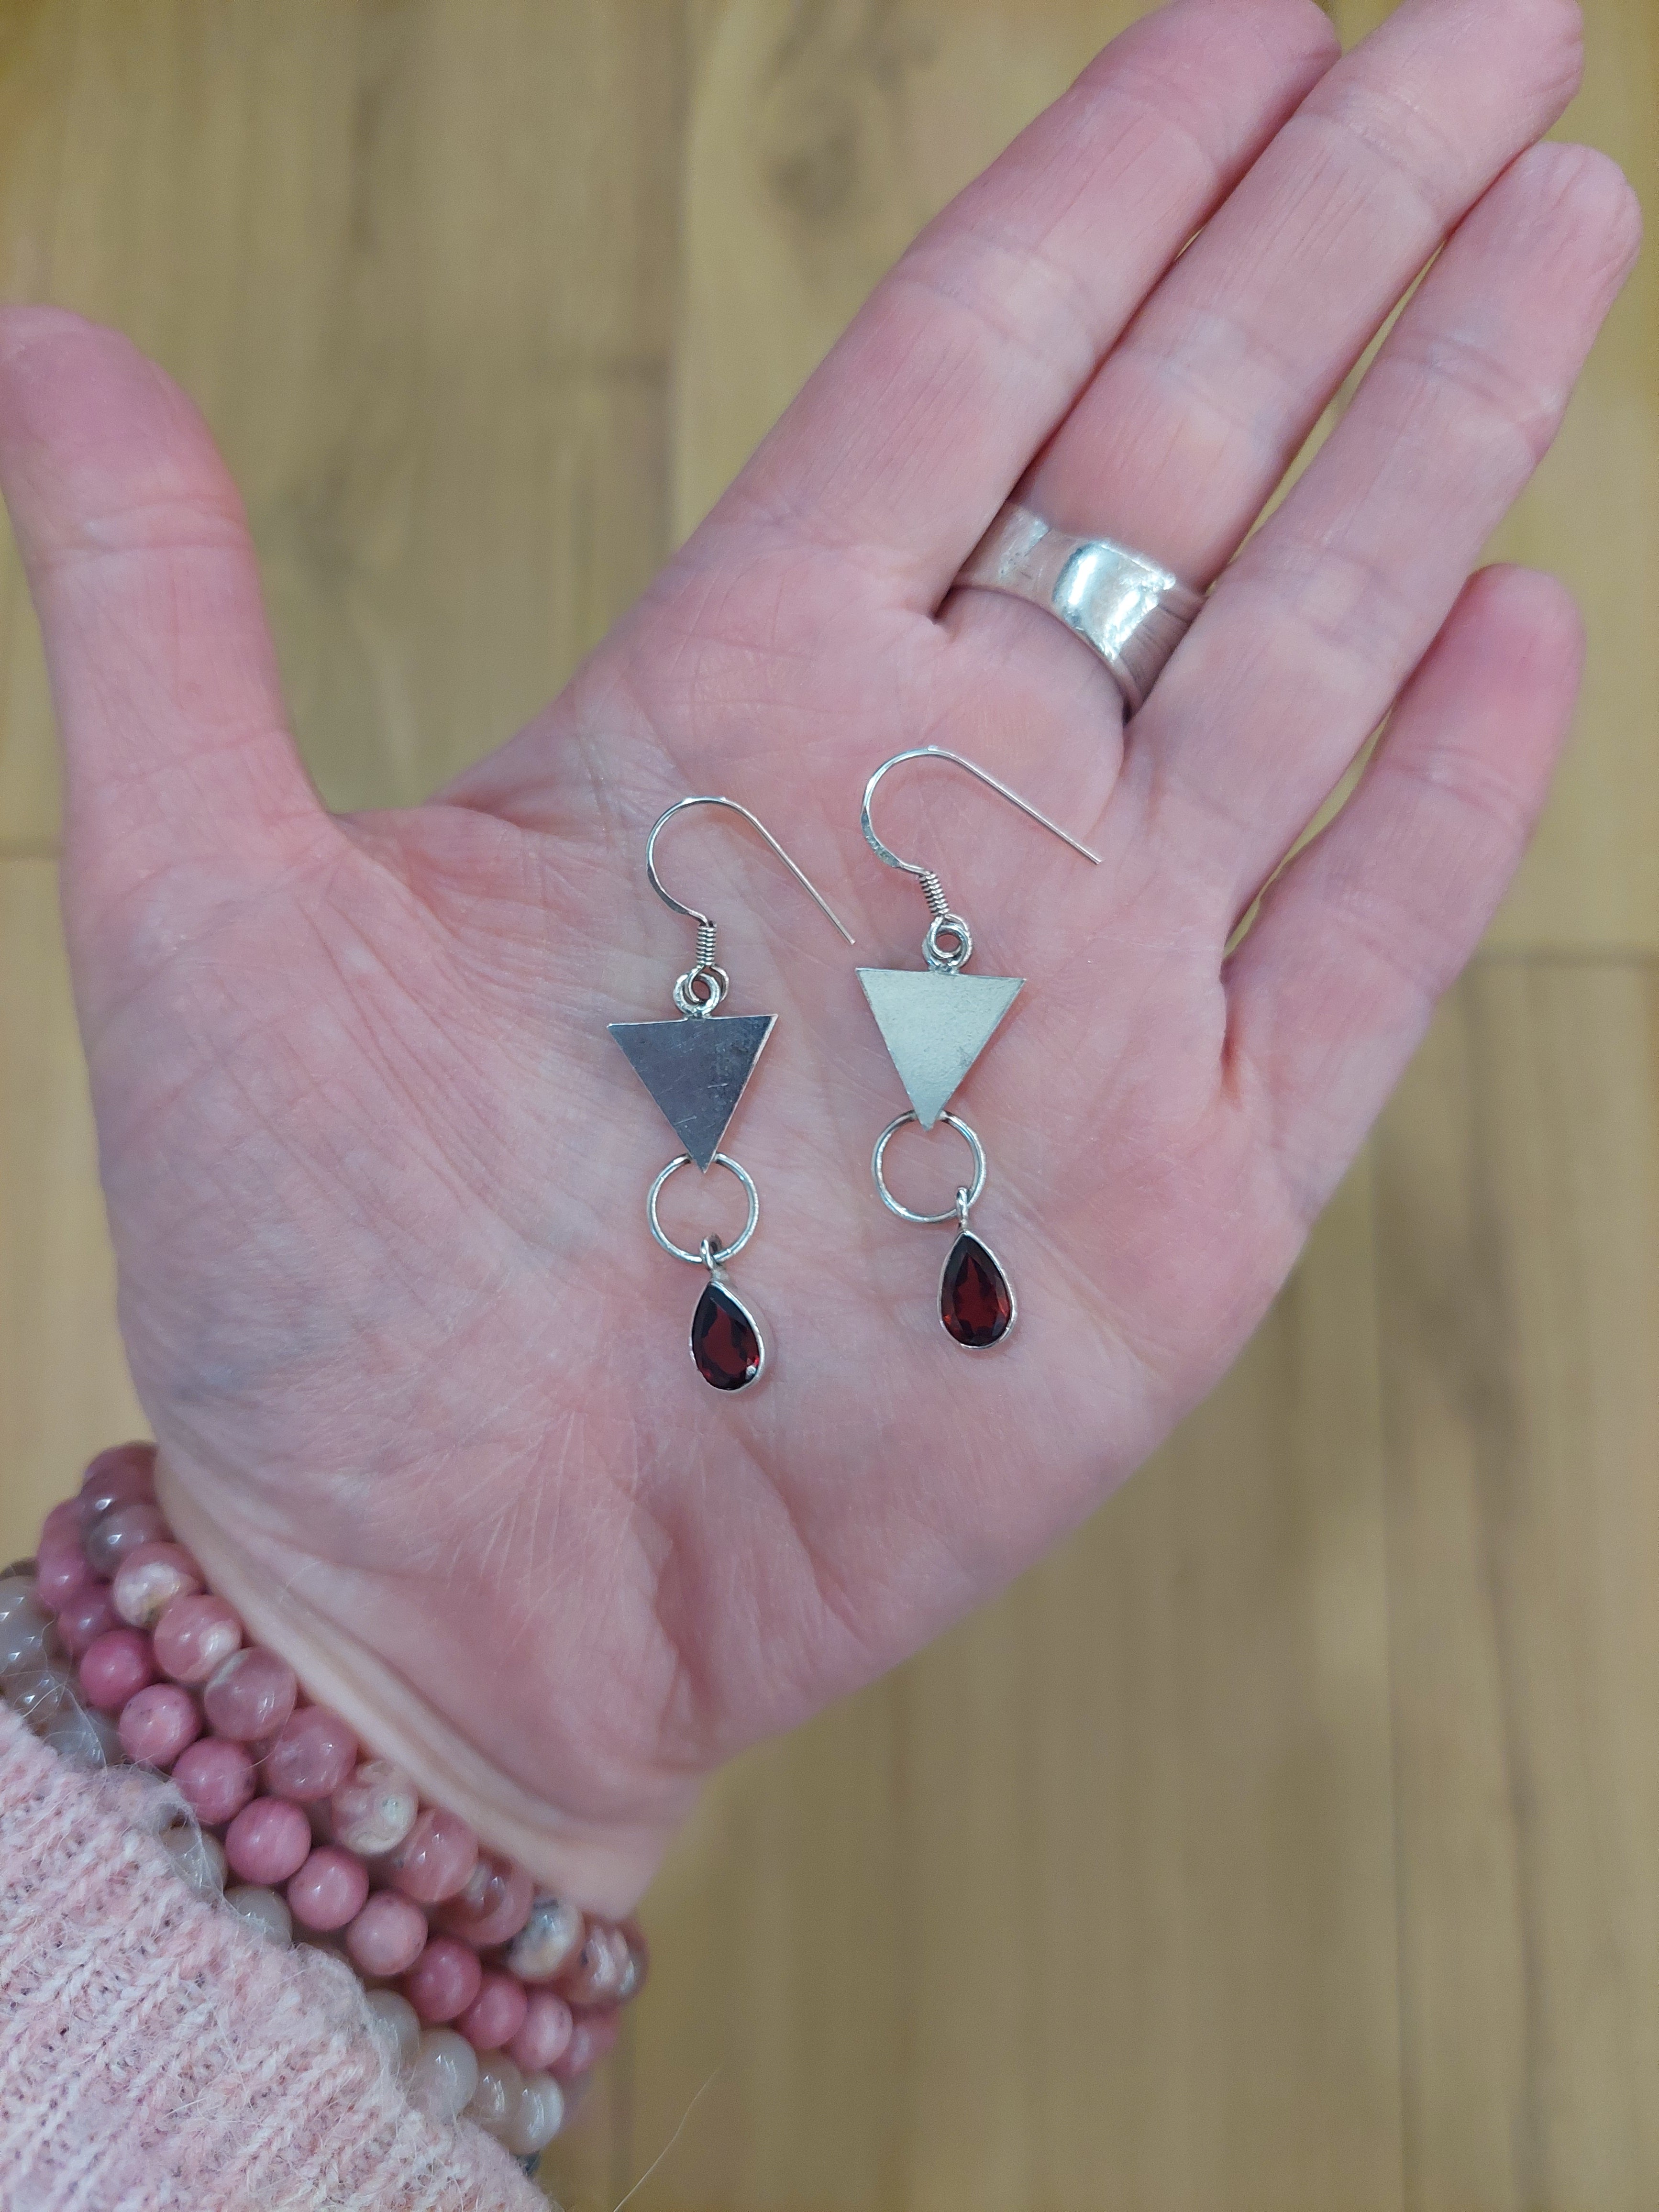 Garnet Teardrop Earrings with 925 Sterling Silver Triangle